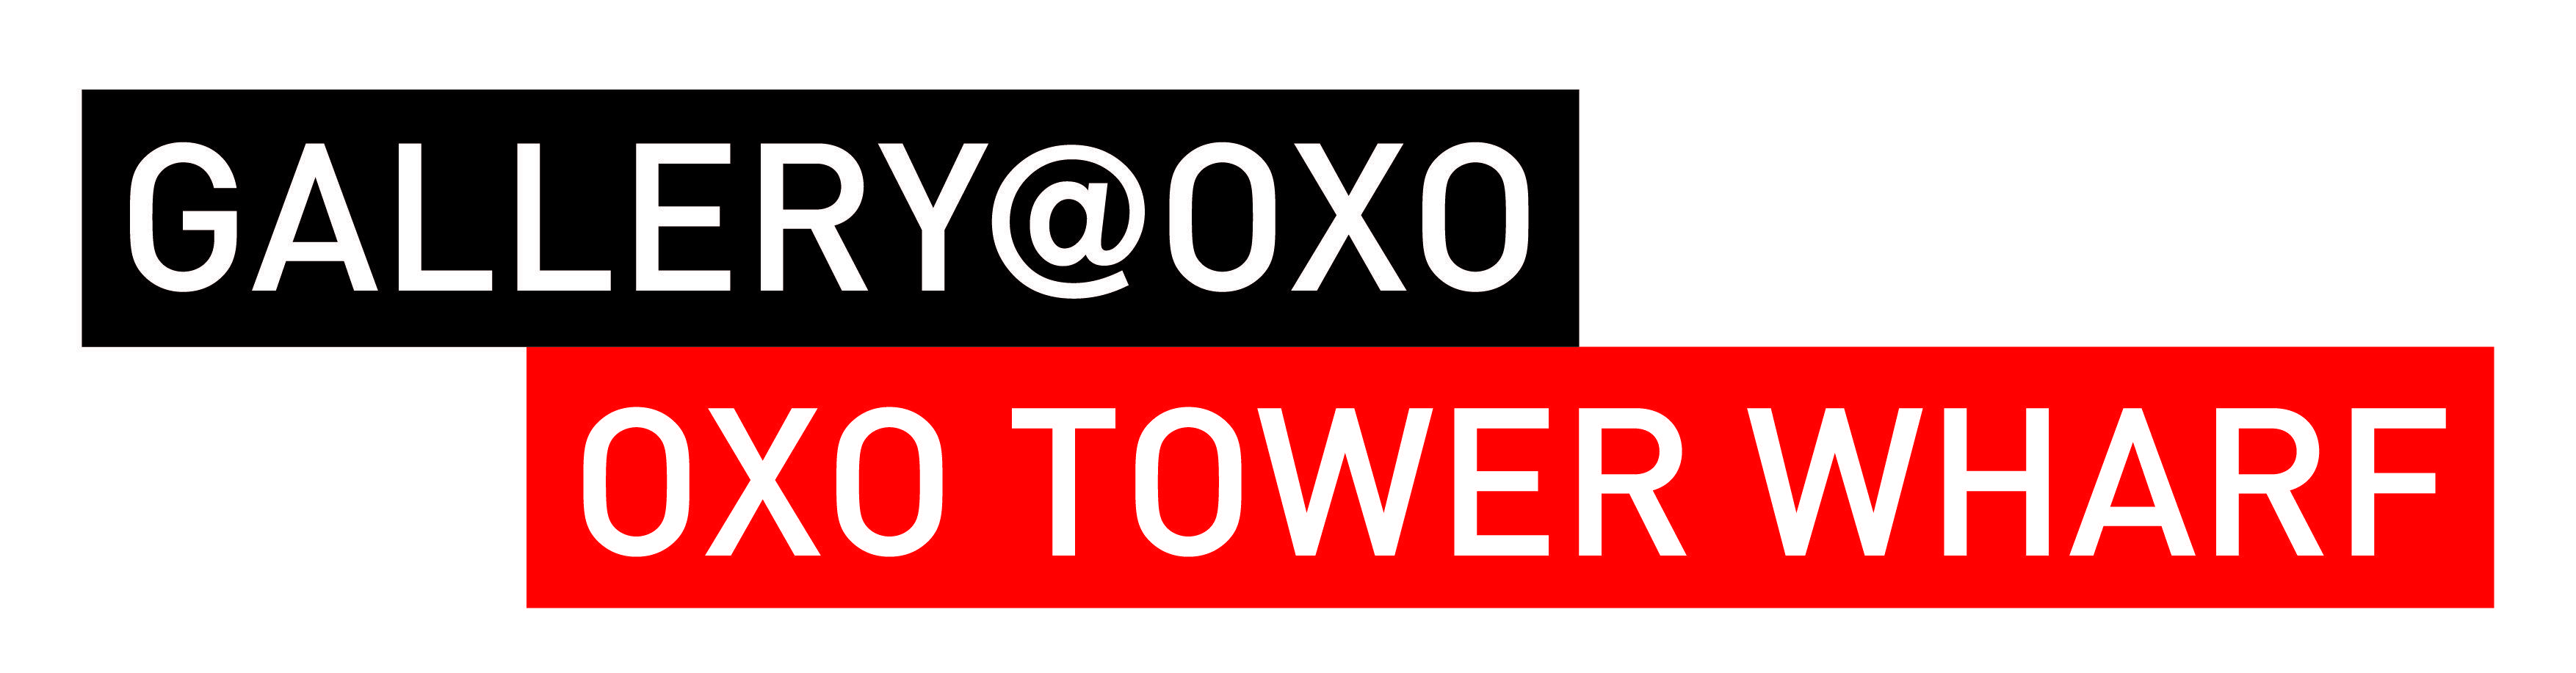 OXO Logo - gallery oxo logo | Ella Freire